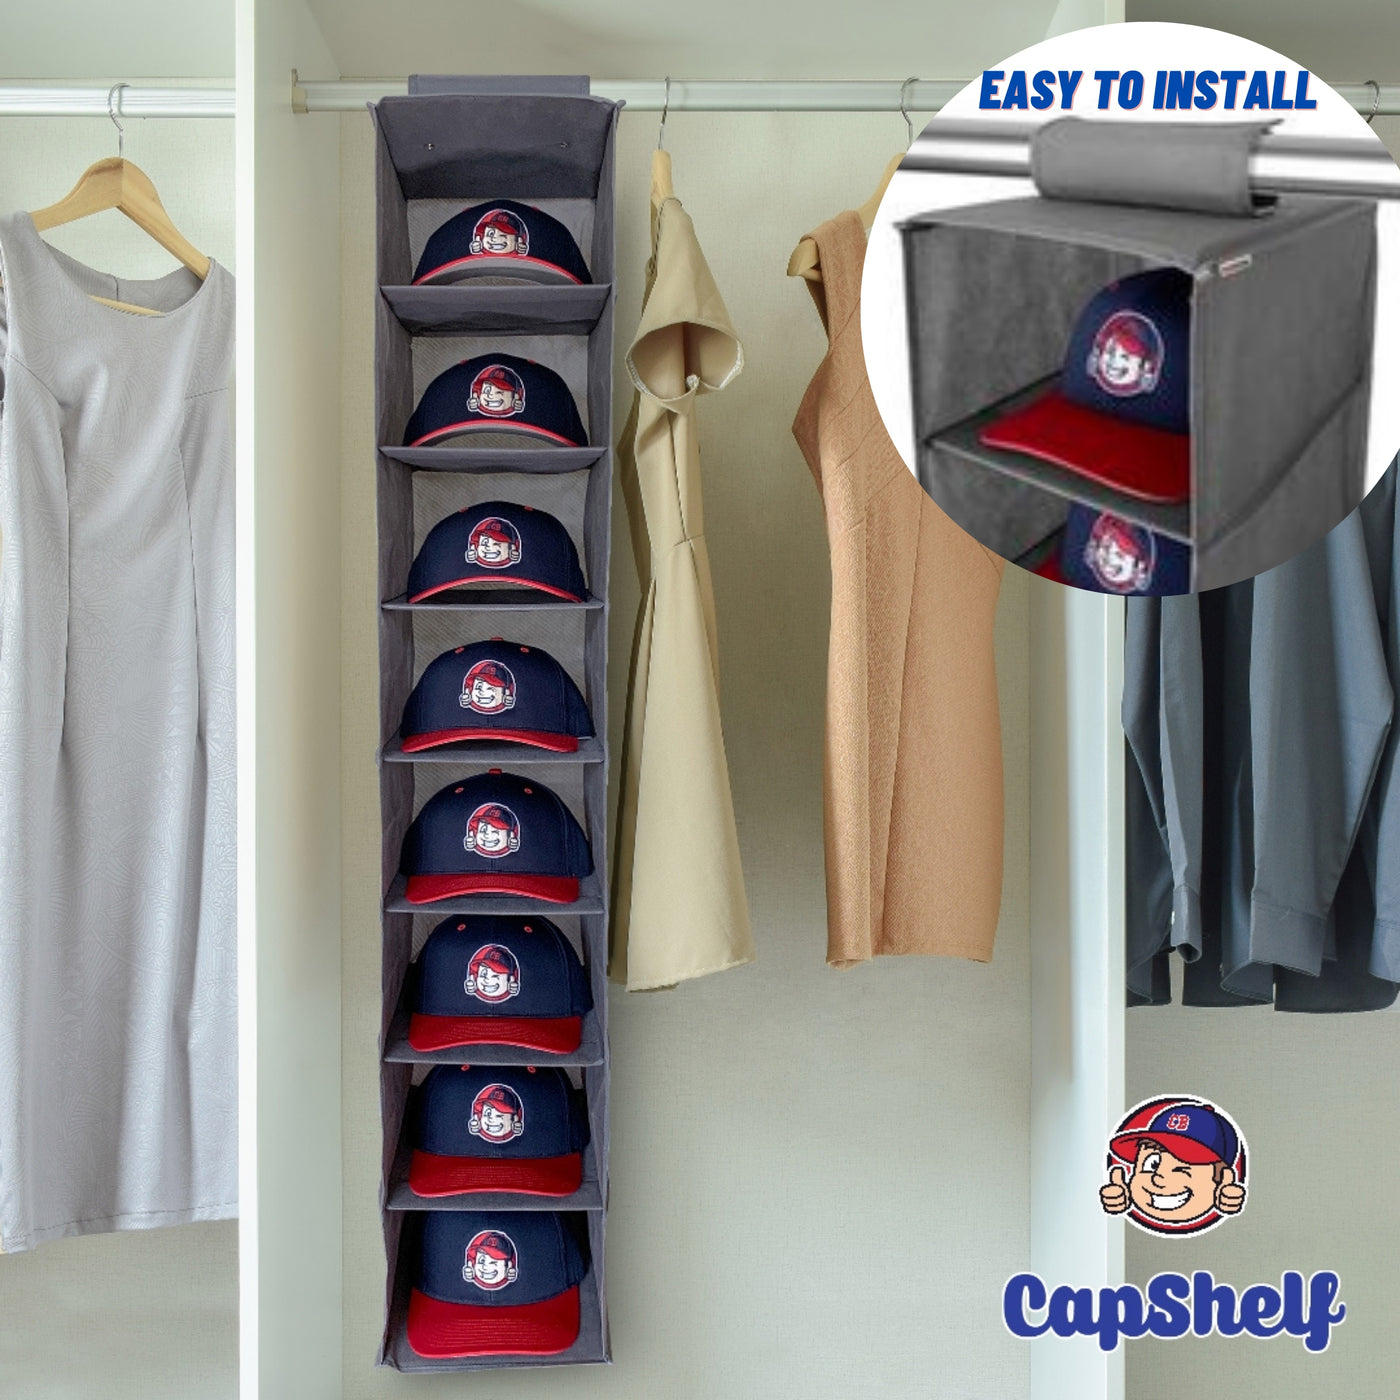 Capshelf - Kappenregal- Aufbewahrung für Schrank, Garderobe und Kleiderstange - Grau - Cap Buddy Shop